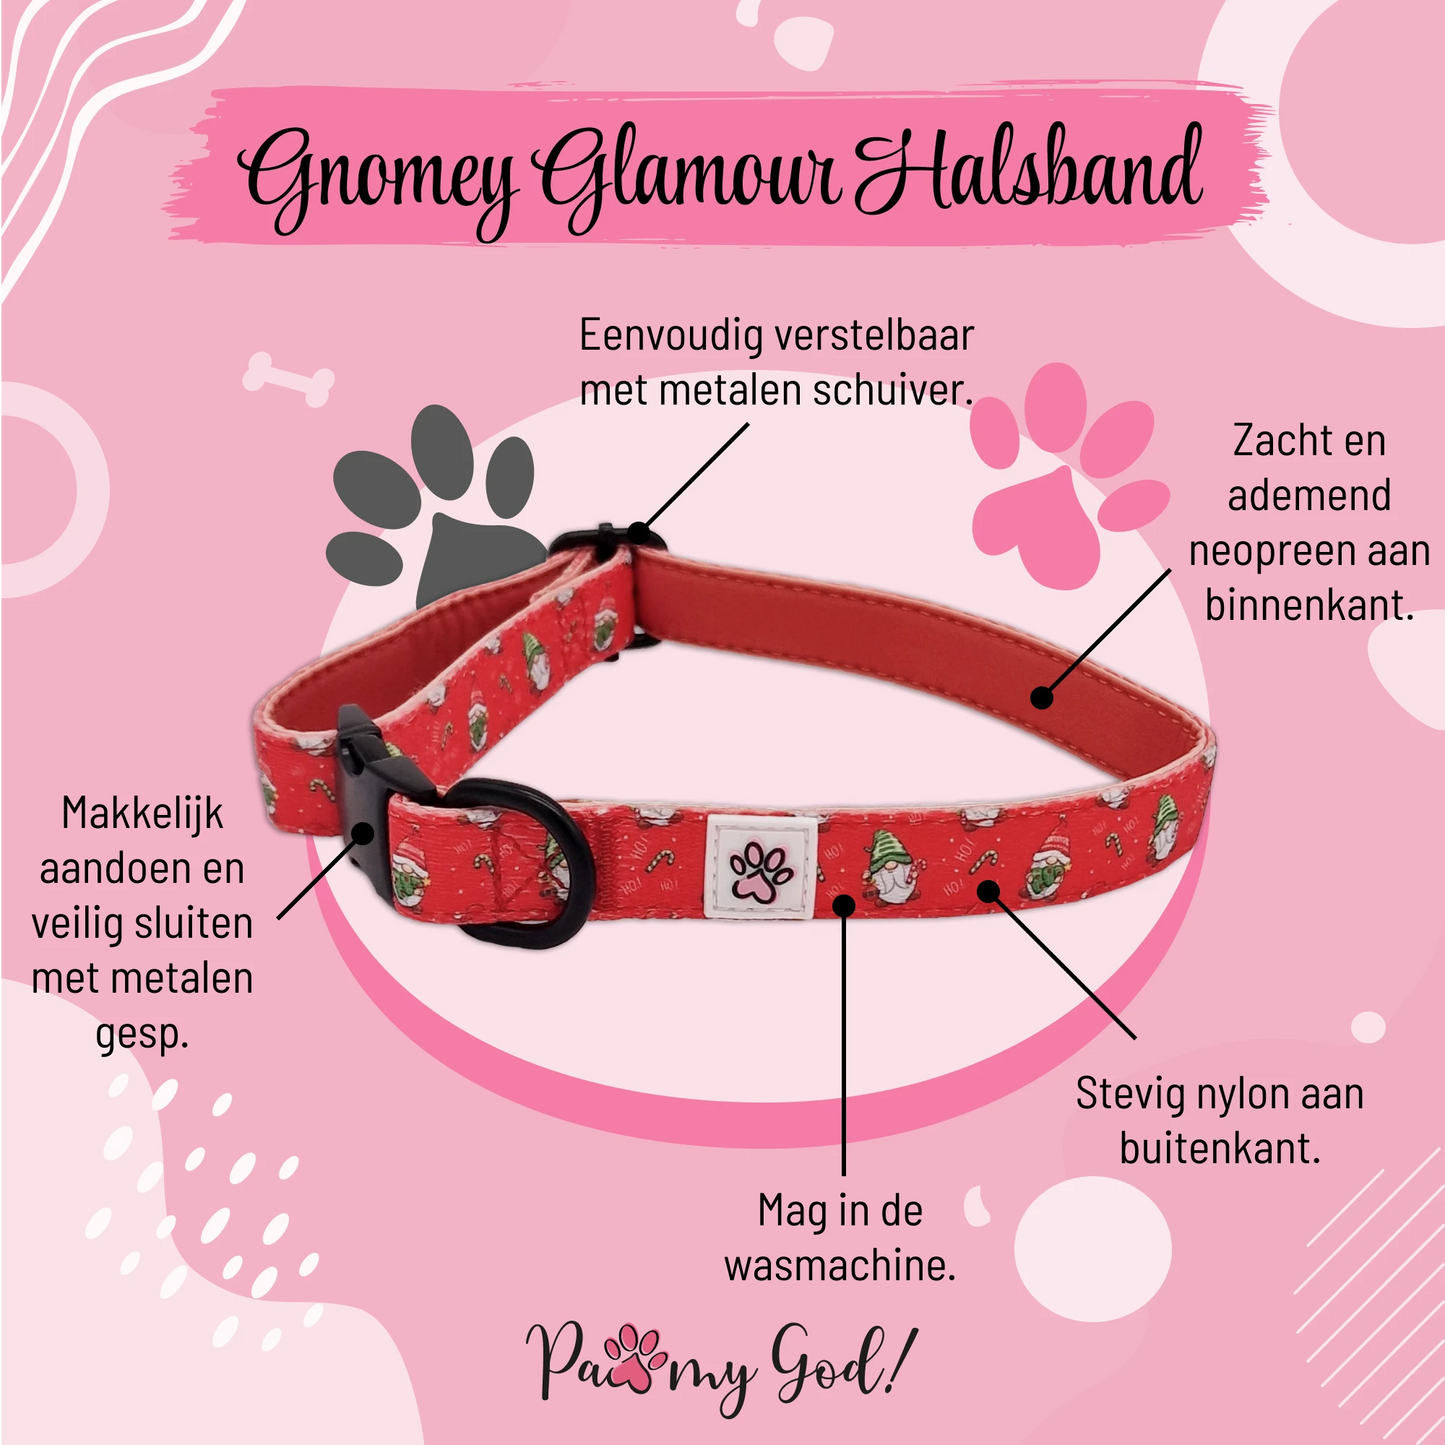 Gnomey Glamour Halsband